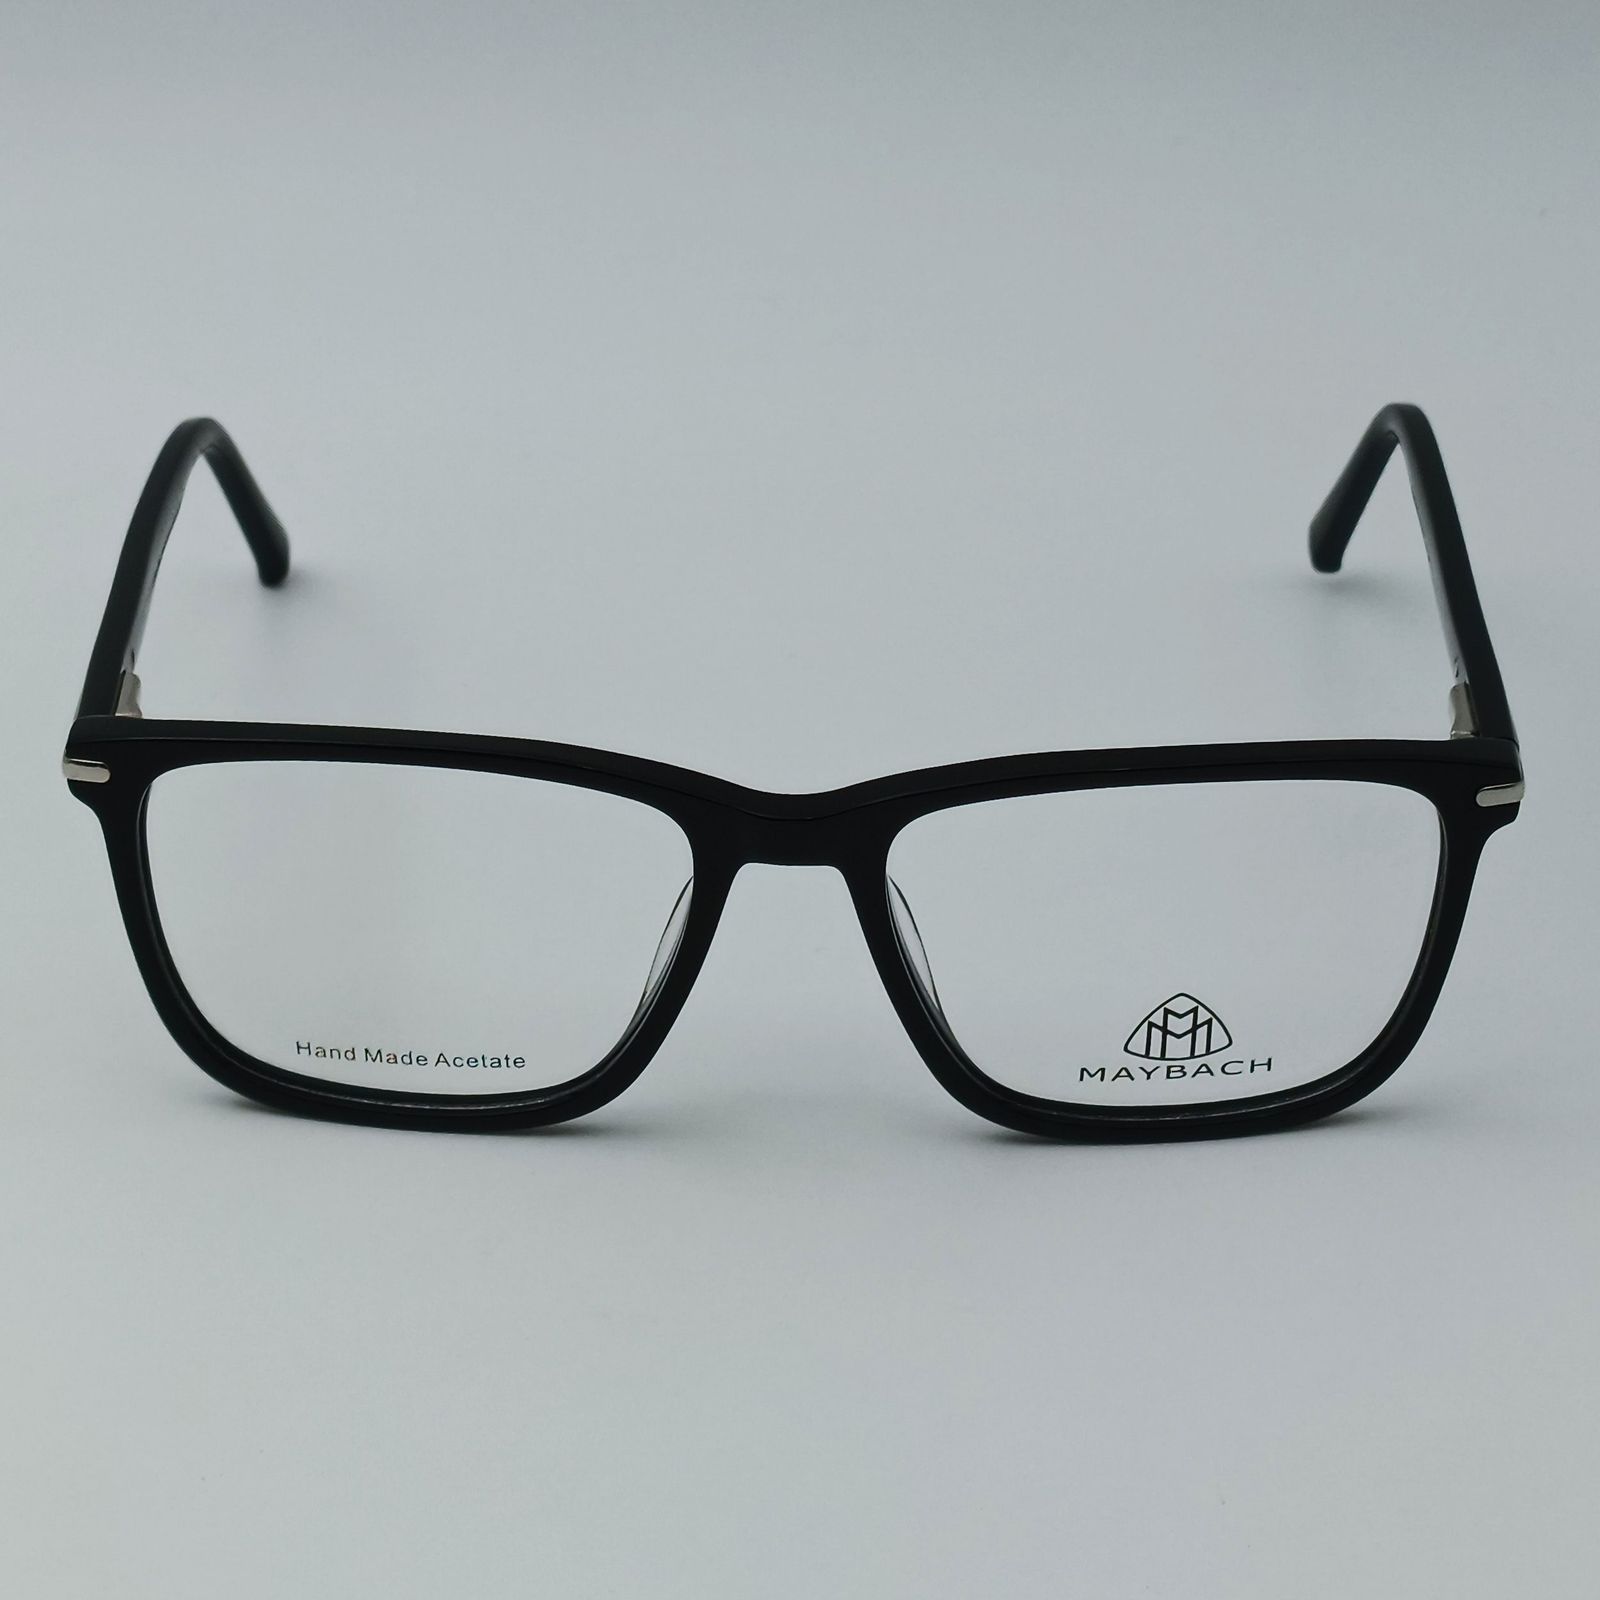 فریم عینک طبی میباخ مدل 6512 C1 -  - 2